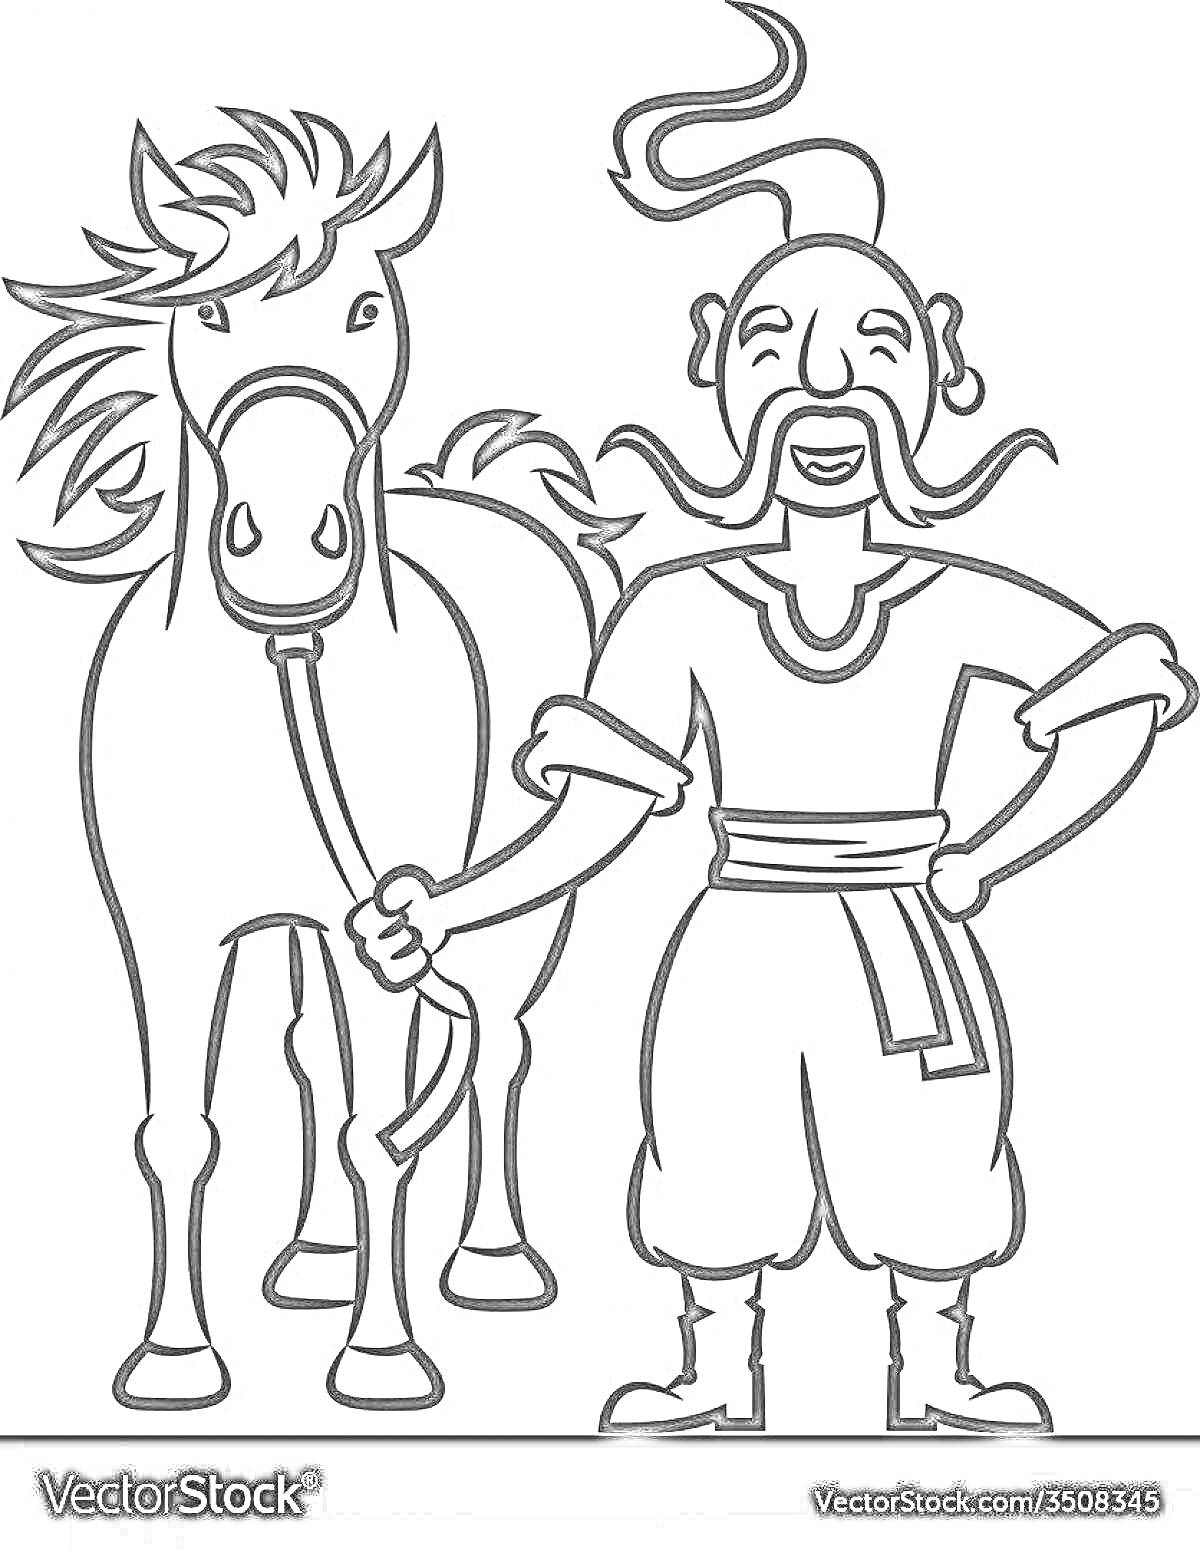 Раскраска Тарас Бульба с конём, улыбающийся мужчина с усами и длинным чубом в традиционной казачьей одежде, левее находится лошадь